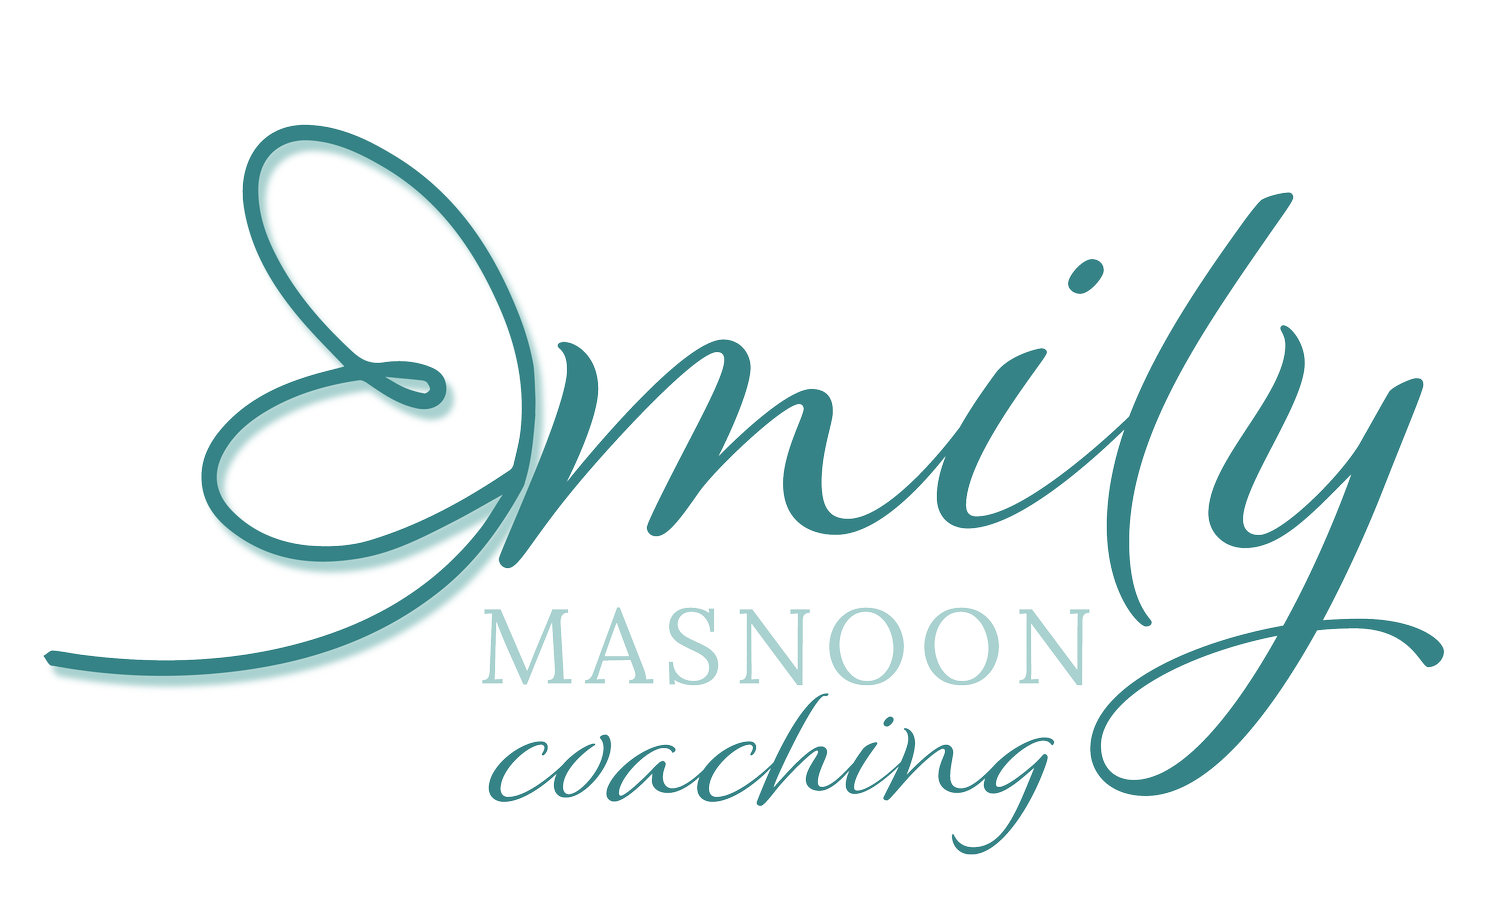 Emily Masnoon Coaching